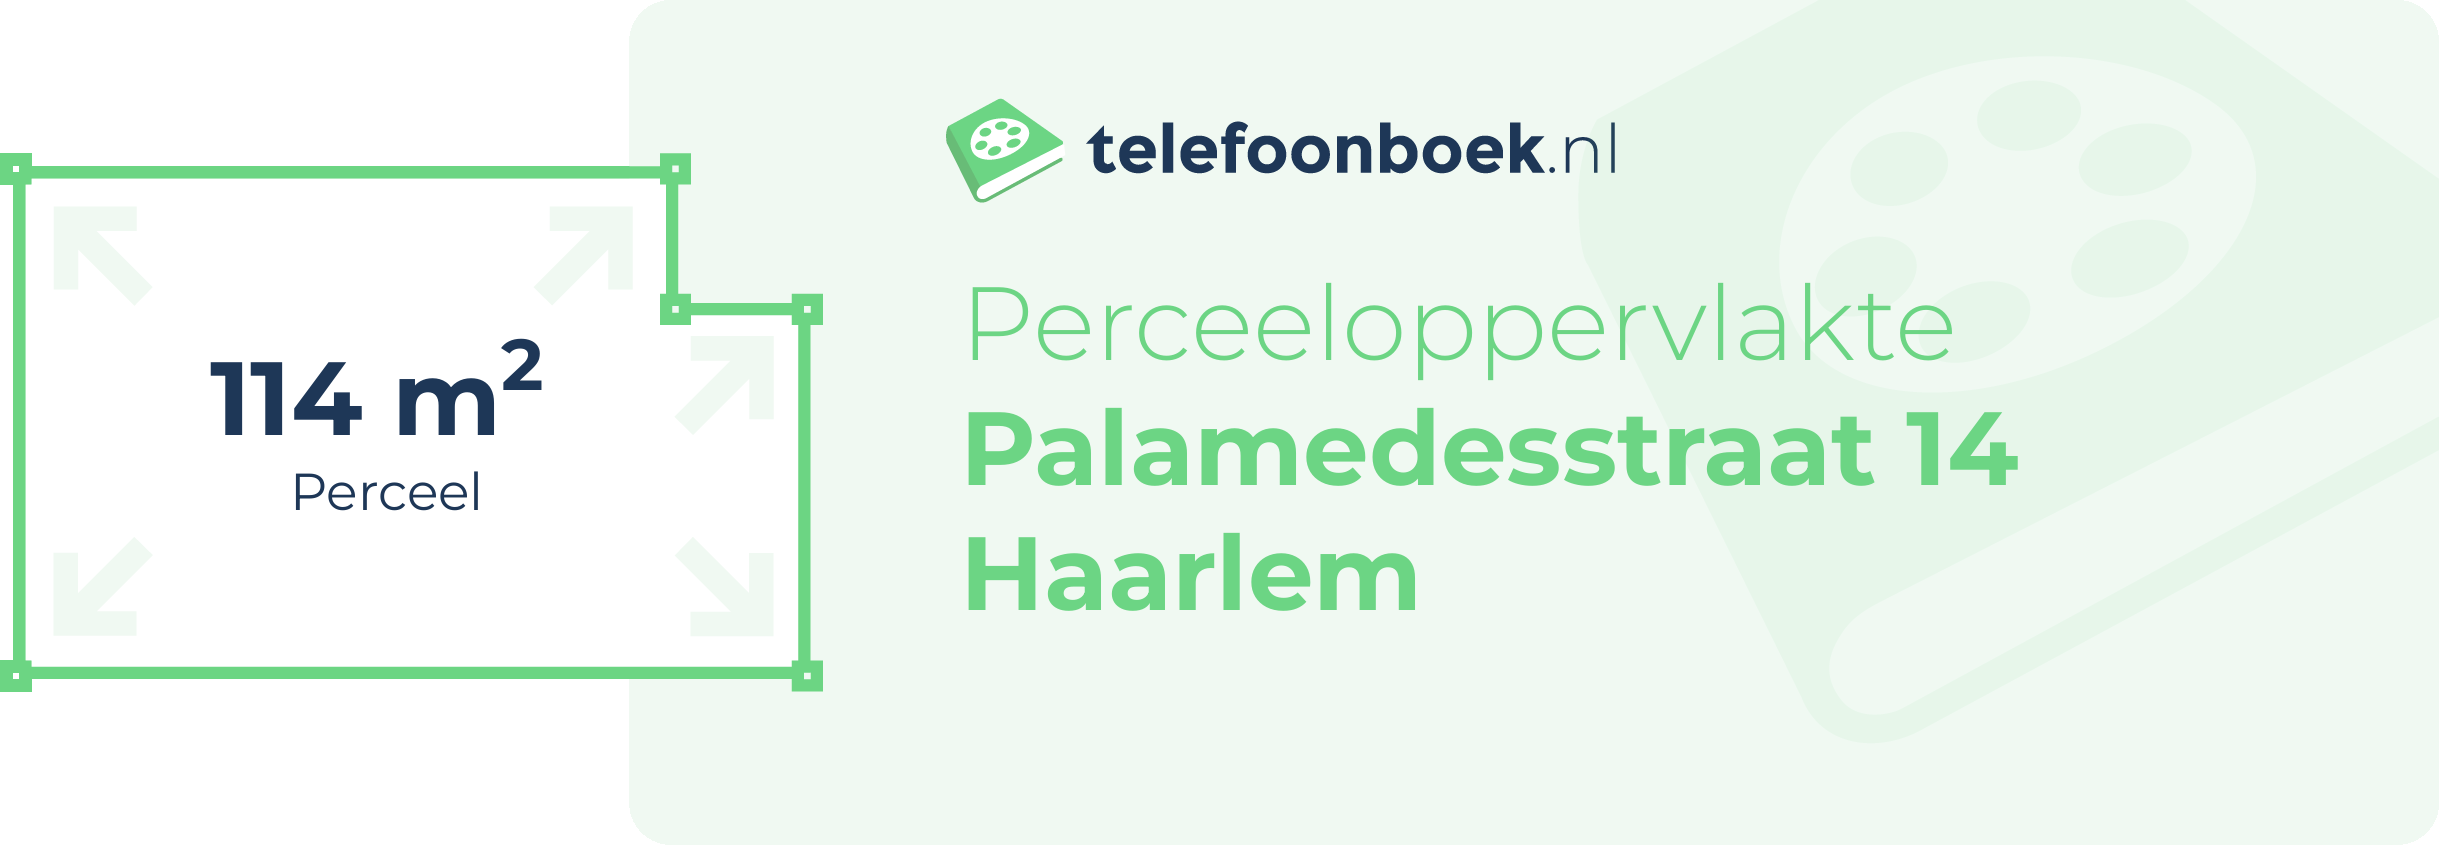 Perceeloppervlakte Palamedesstraat 14 Haarlem